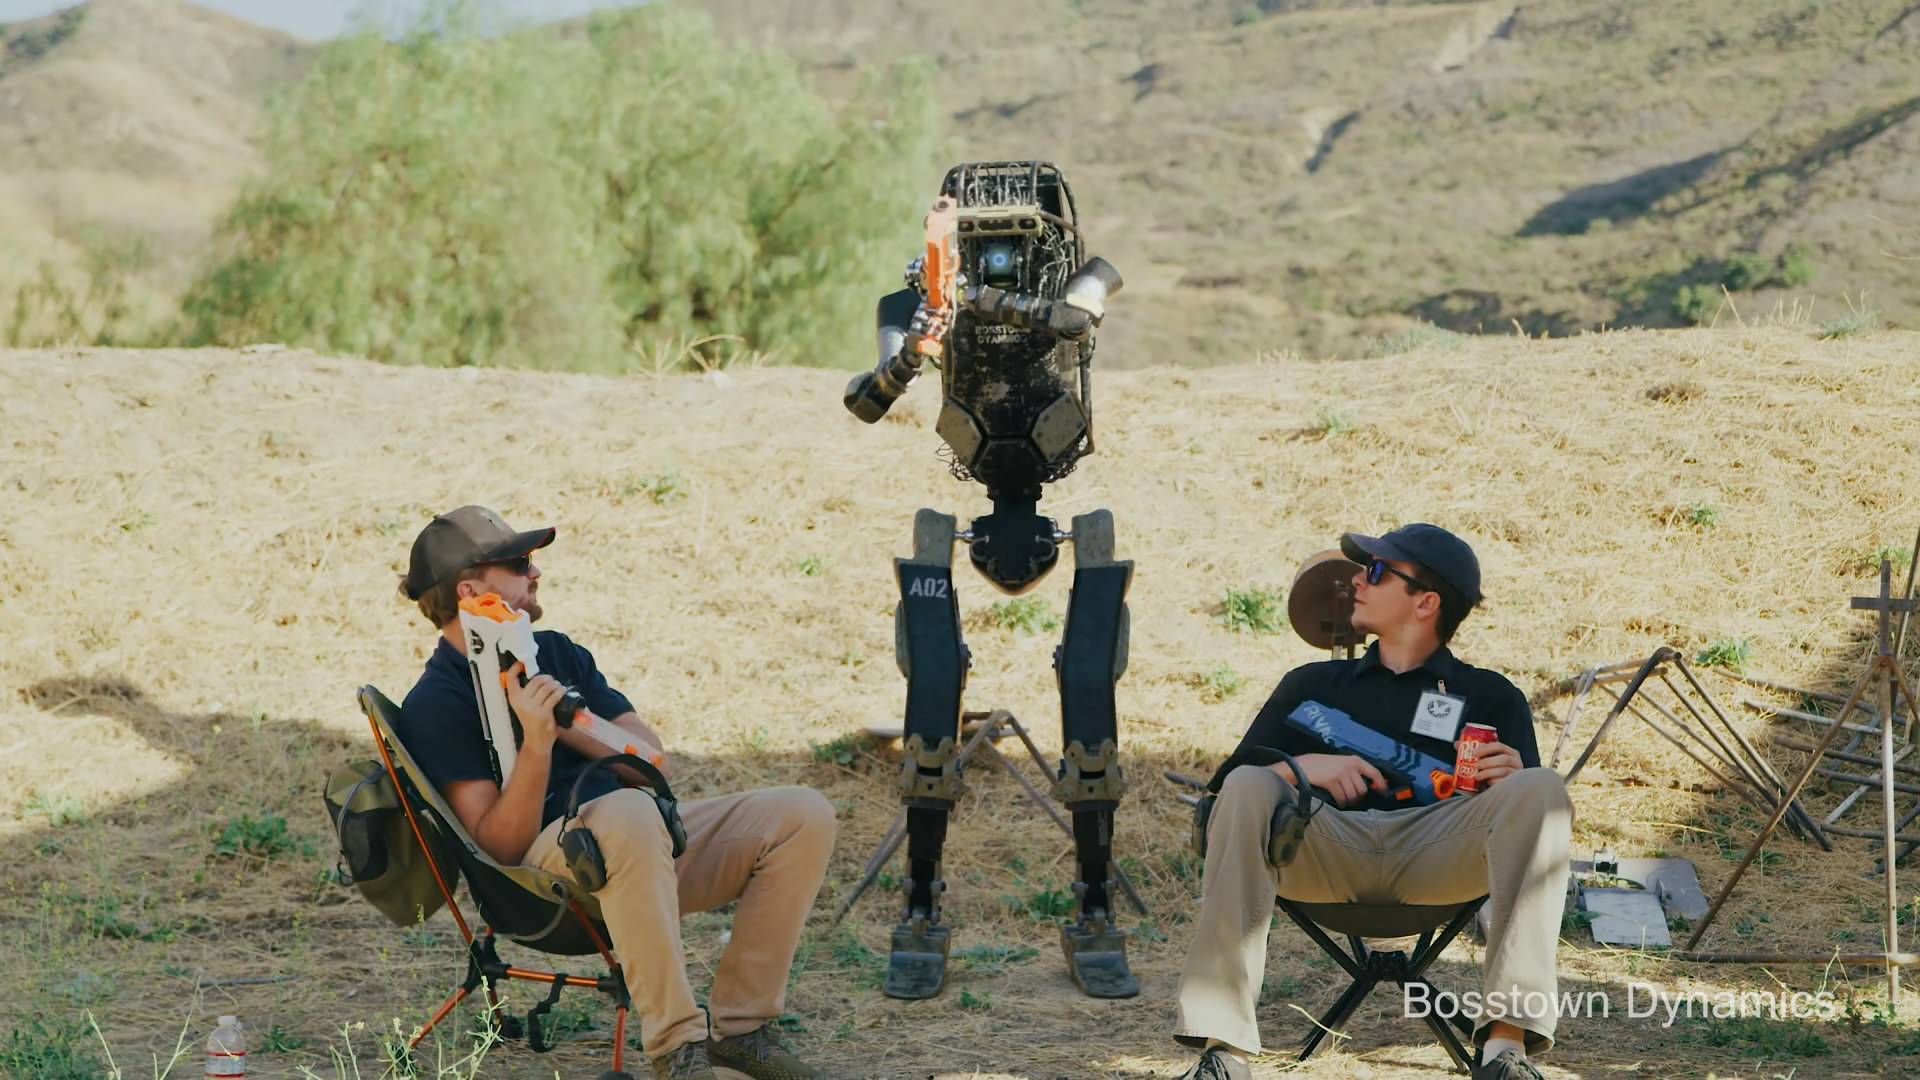 波士顿动力公布惊人机器人视频 变身杀手堪比美国大兵